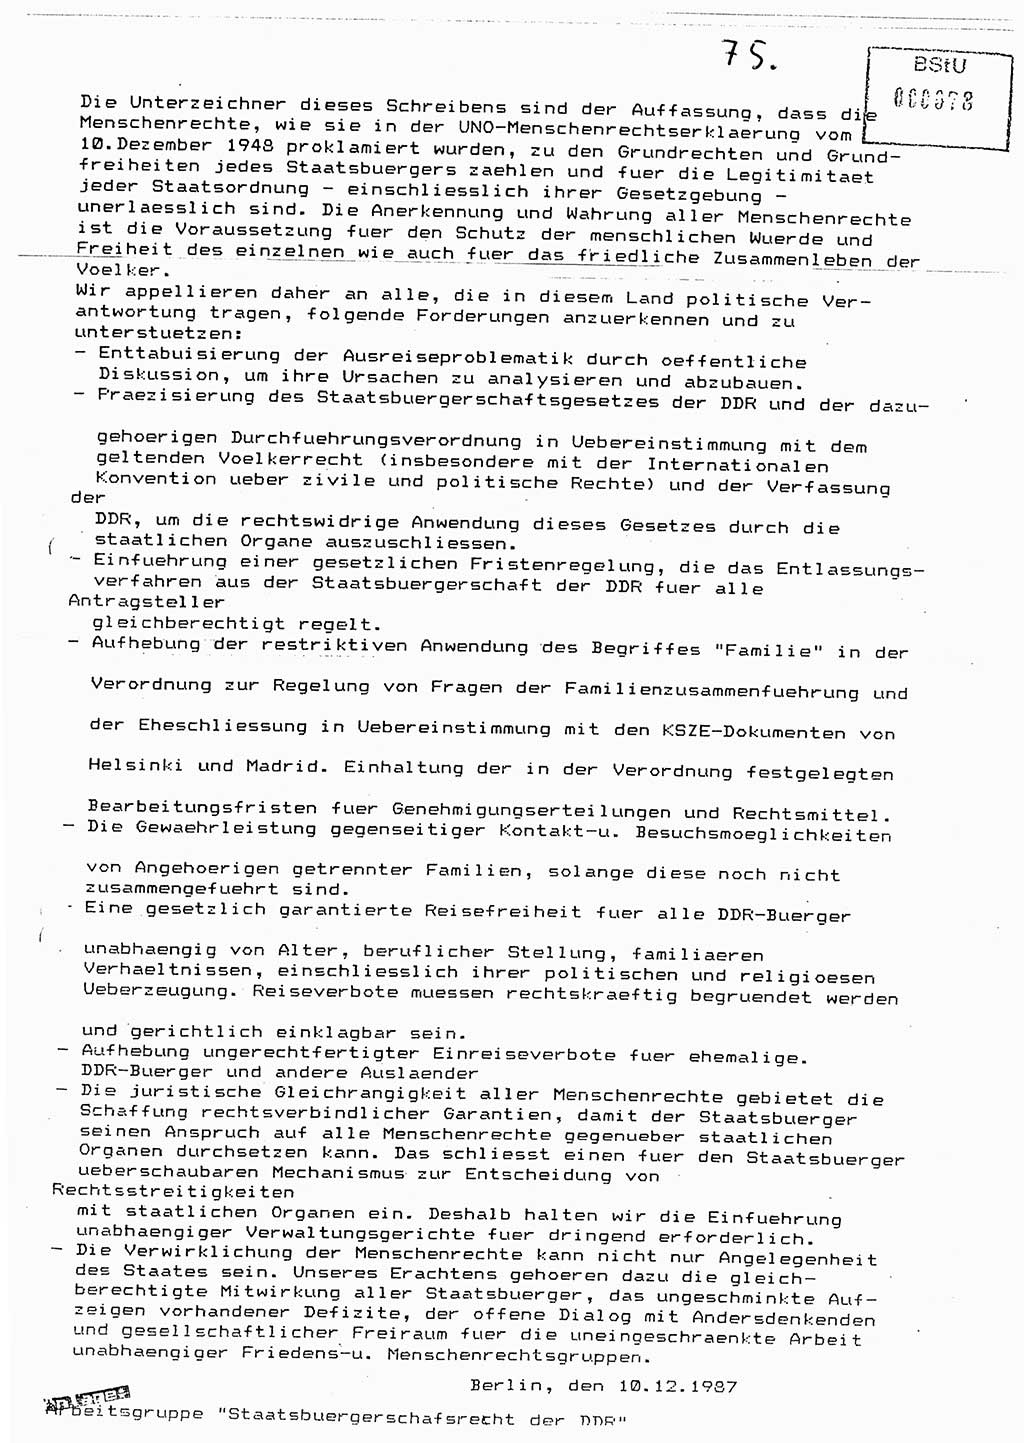 Diplomarbeit Major Günter Müller (HA Ⅸ/9), Ministerium für Staatssicherheit (MfS) [Deutsche Demokratische Republik (DDR)], Juristische Hochschule (JHS), Vertrauliche Verschlußsache (VVS) o001-402/89, Potsdam 1989, Seite 75 (Dipl.-Arb. MfS DDR JHS VVS o001-402/89 1989, S. 75)